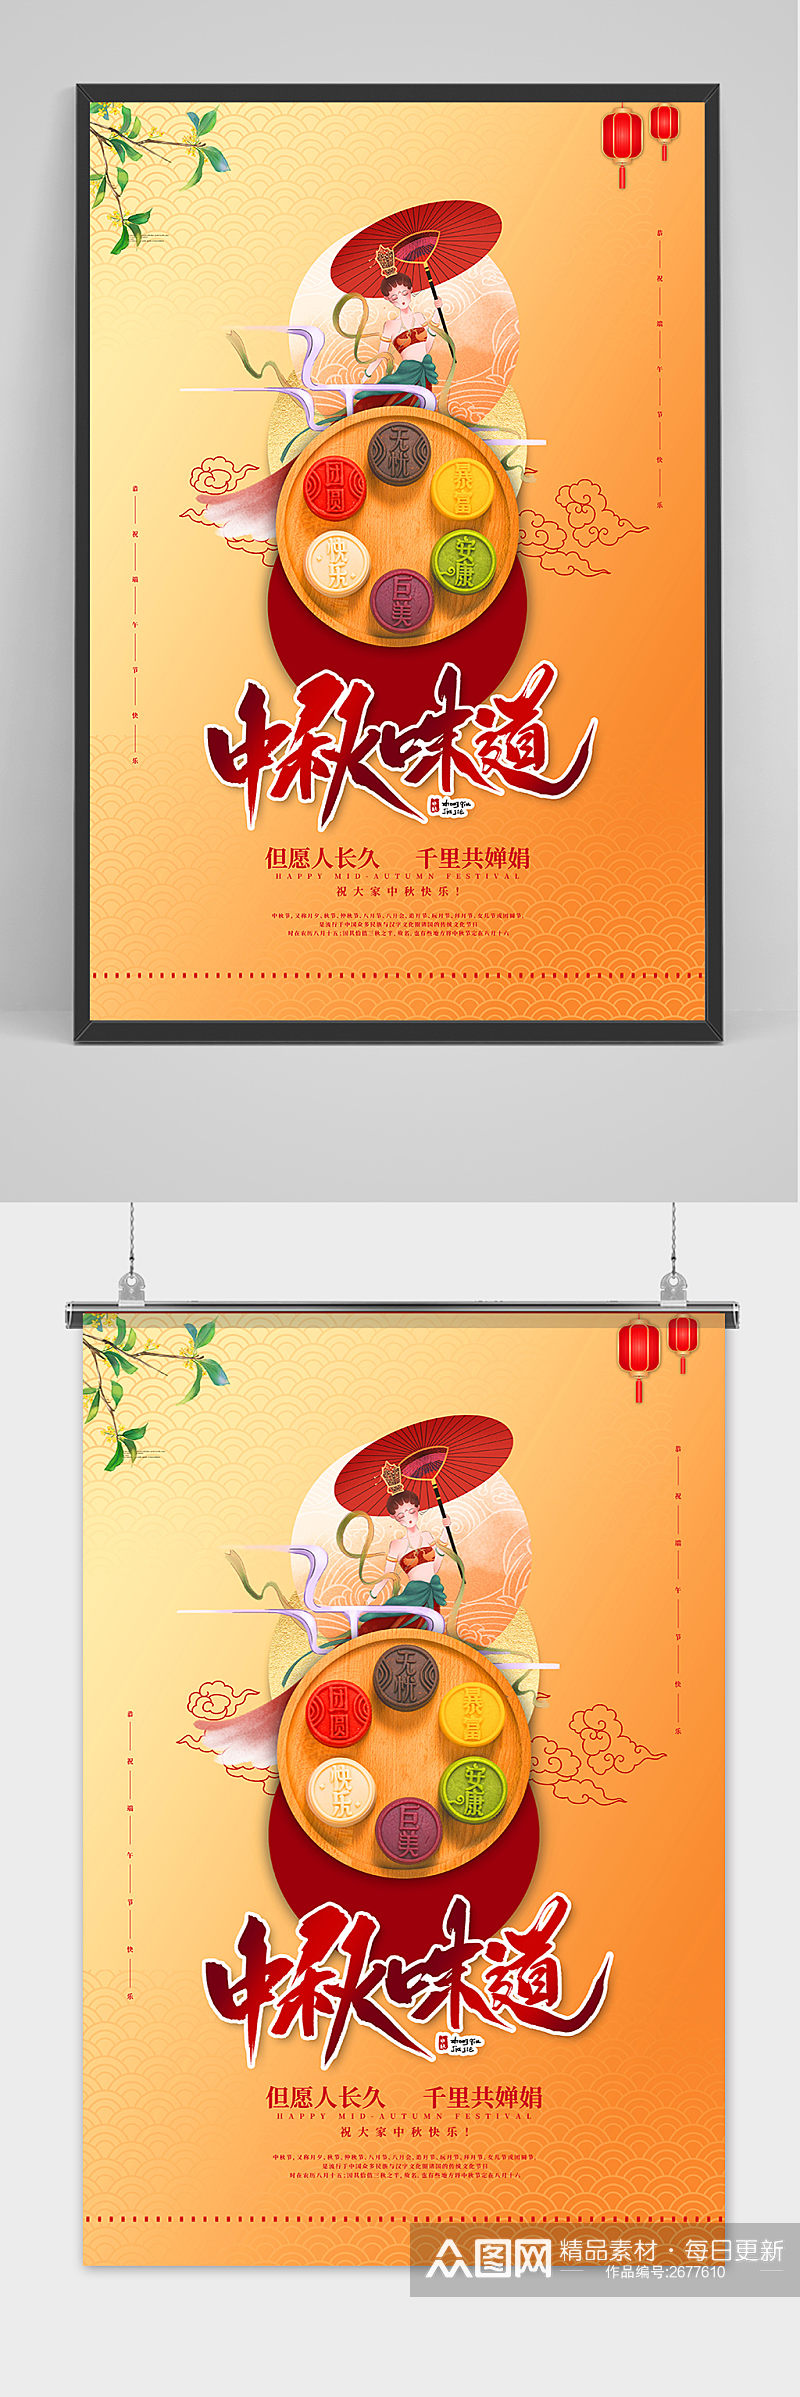 简洁大气传统中国风中秋节海报素材